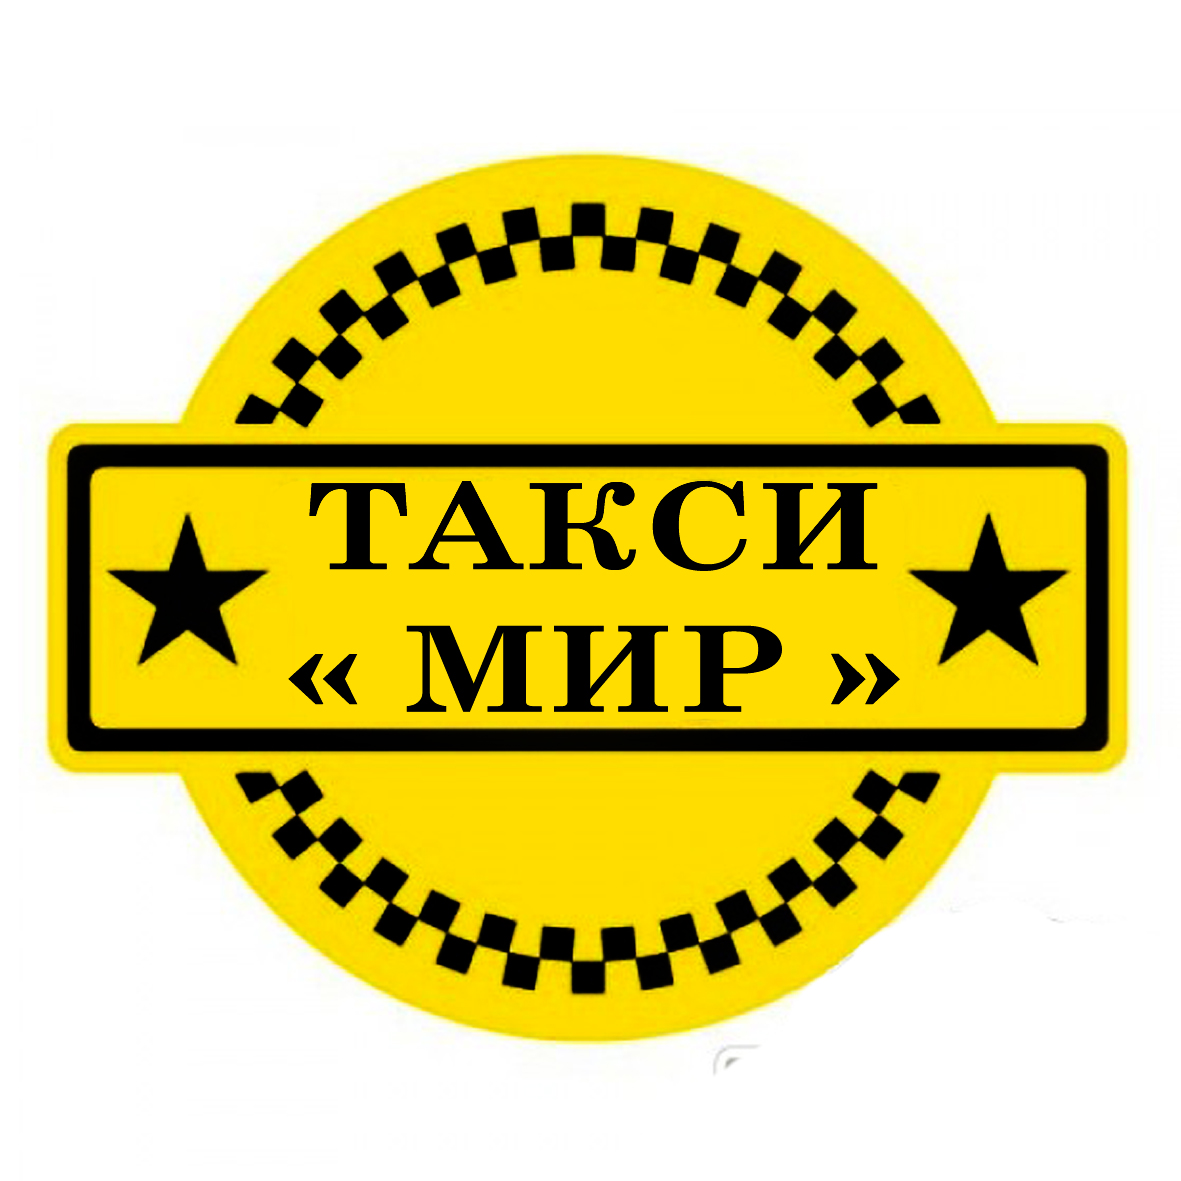 Сертифицированный таксопарк